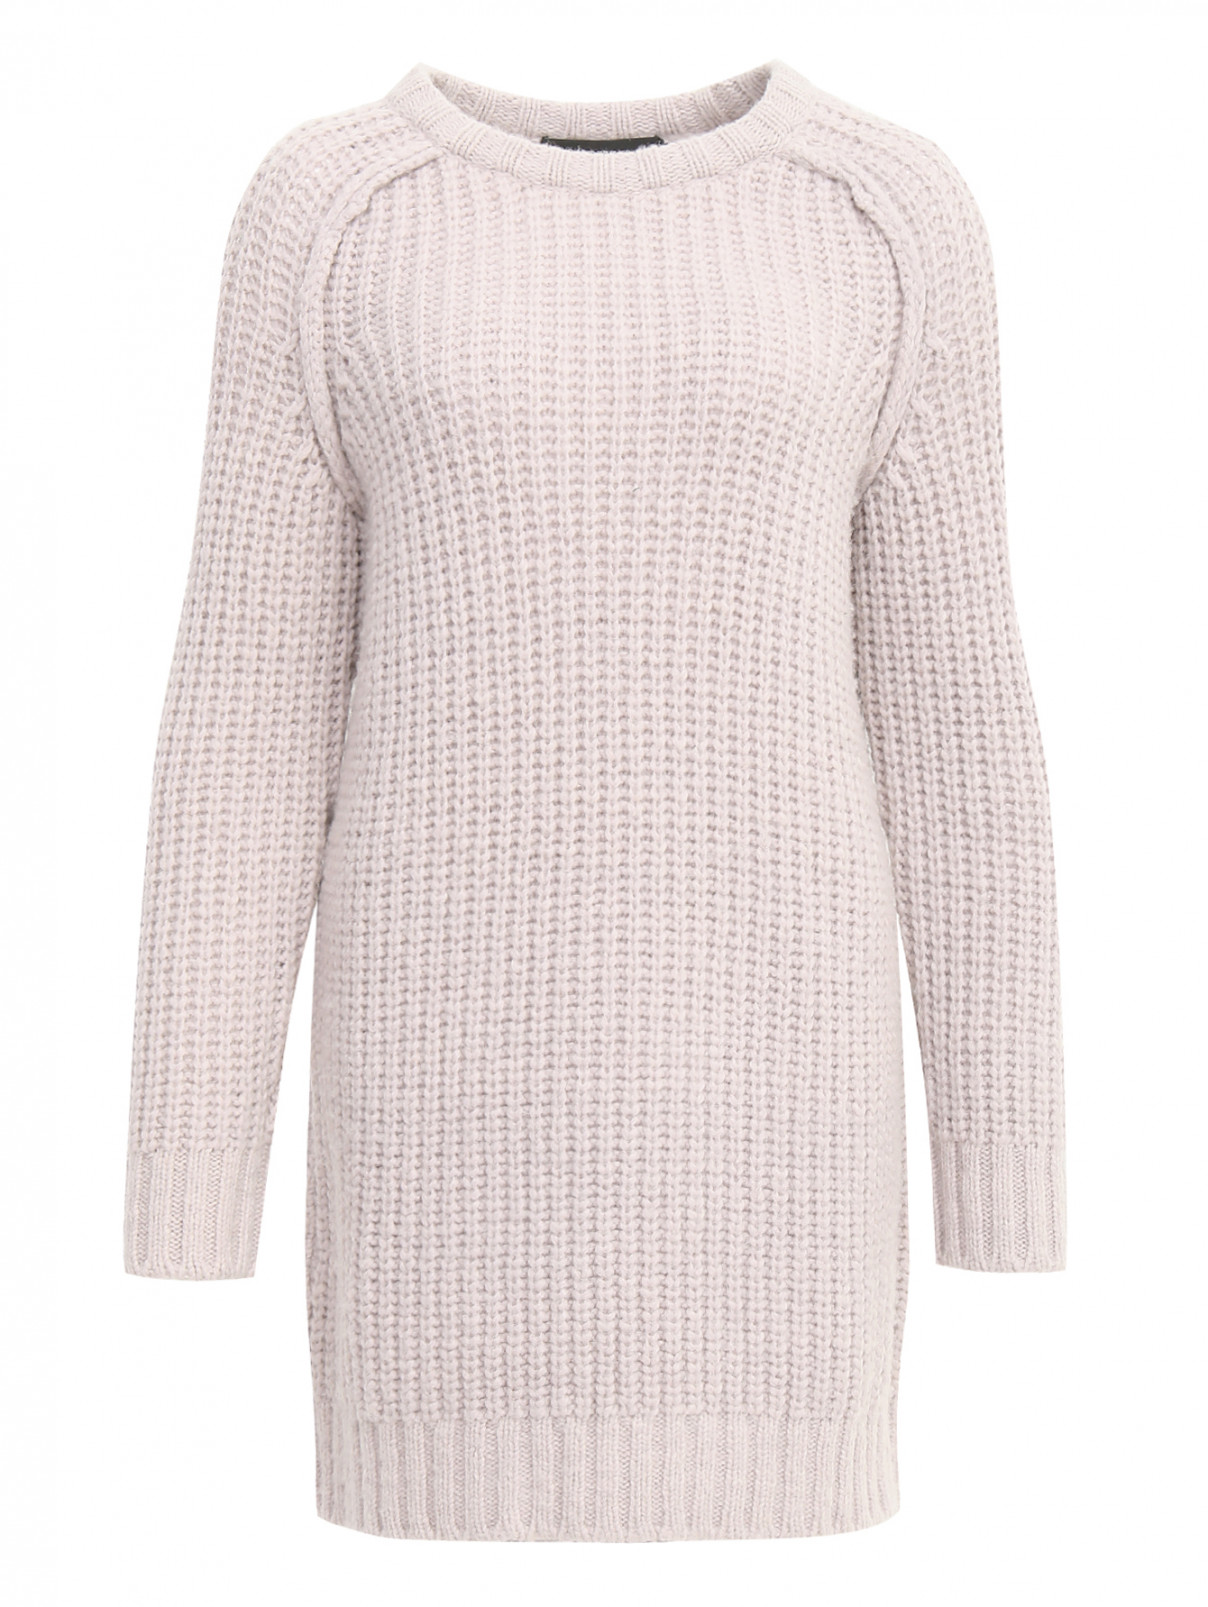 Удлиненный свитер из смесовой шерсти фактурной вязки Cedric Charlier  –  Общий вид  – Цвет:  Розовый